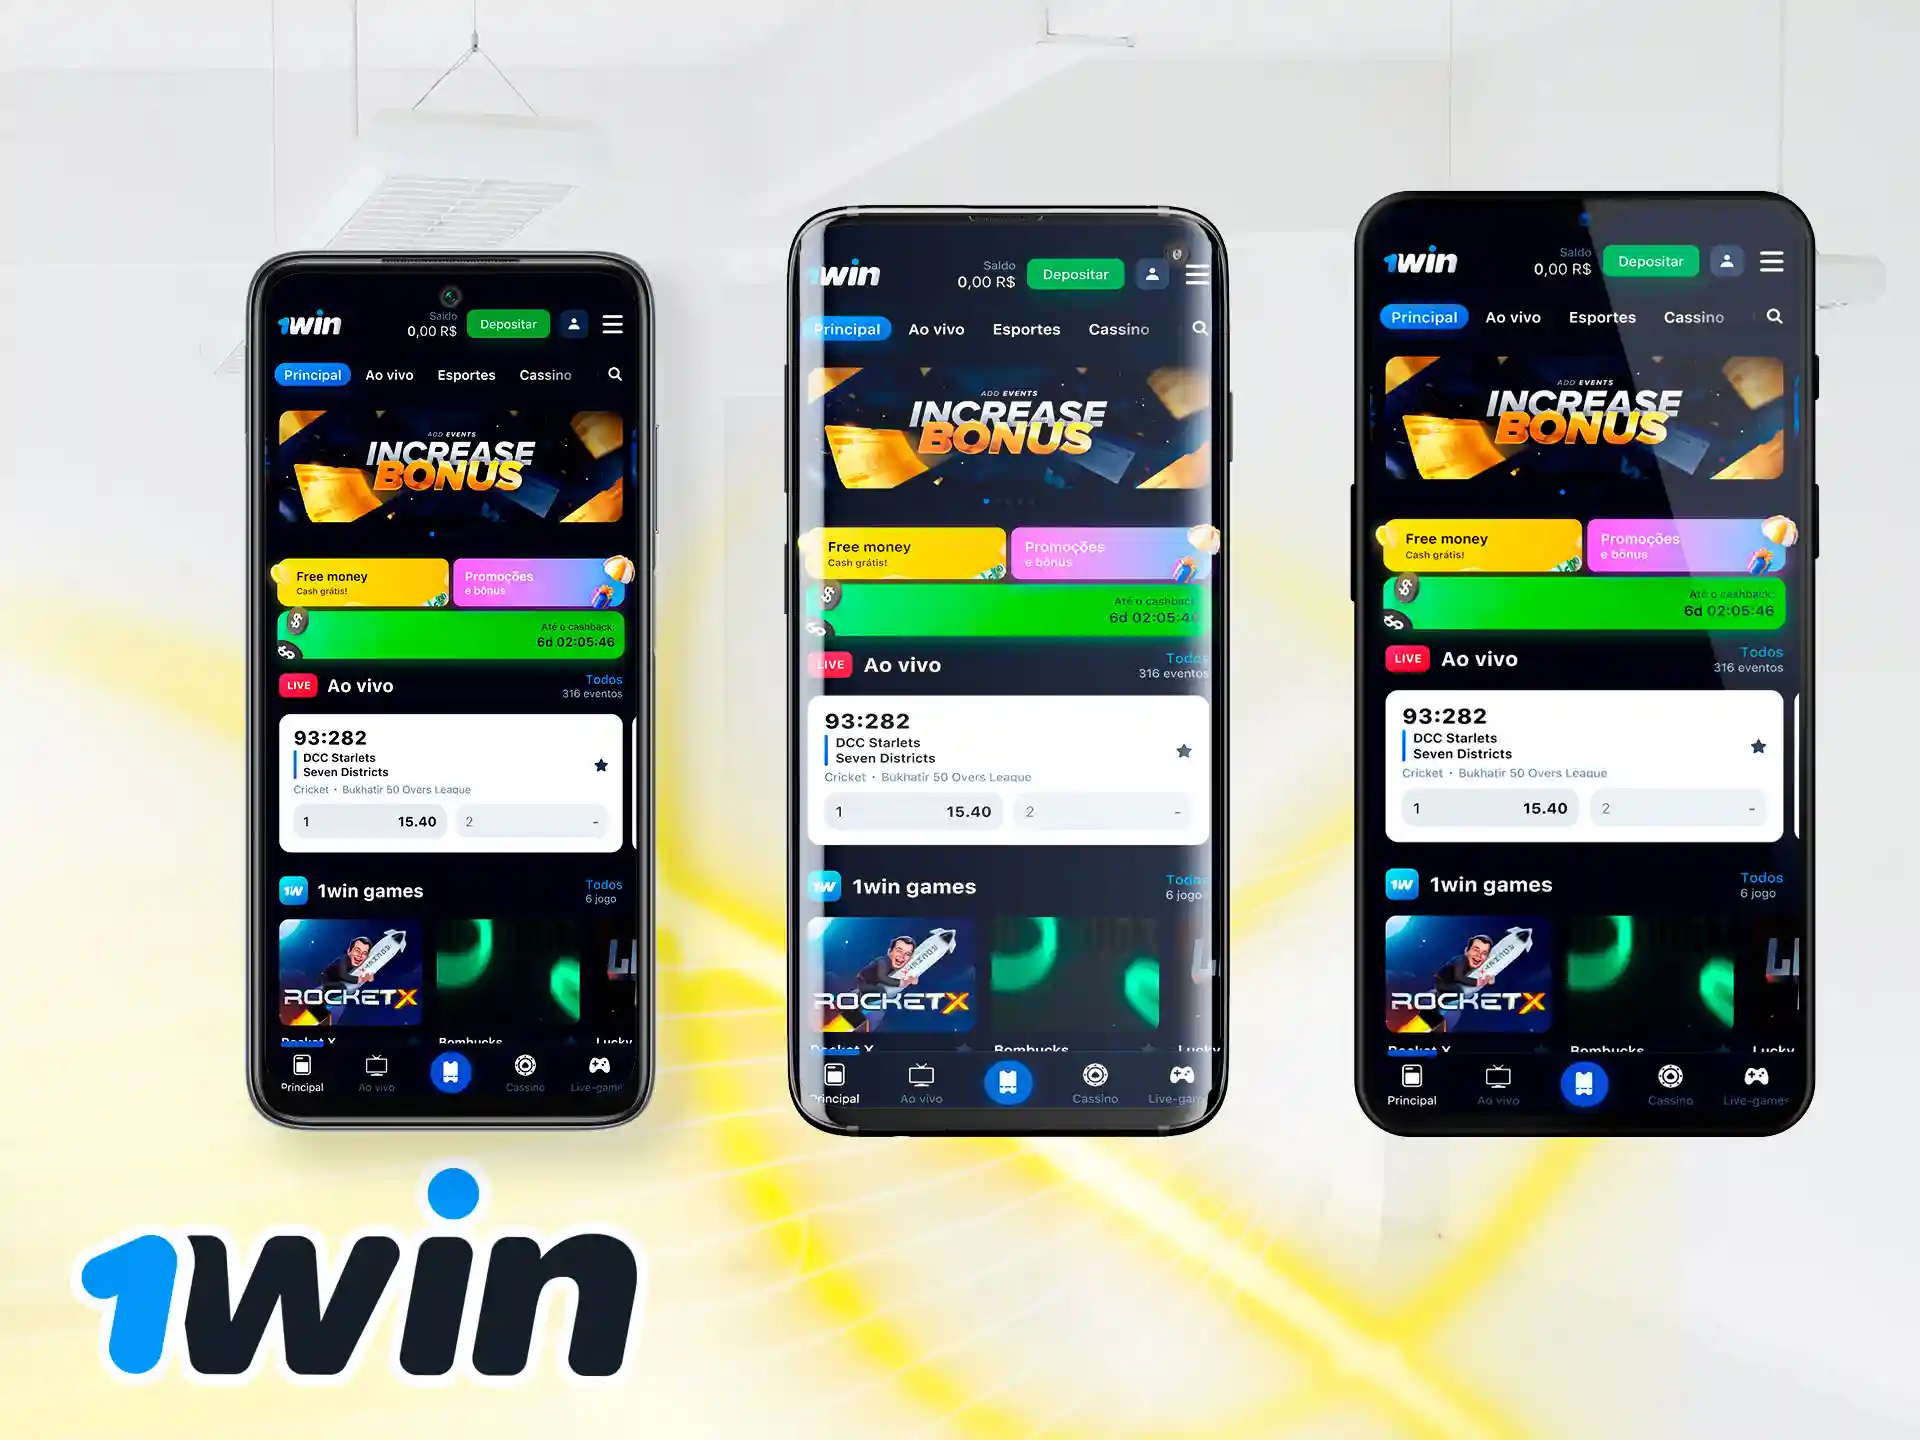 Você pode baixar o aplicativo 1win em qualquer smartphone Android moderno.